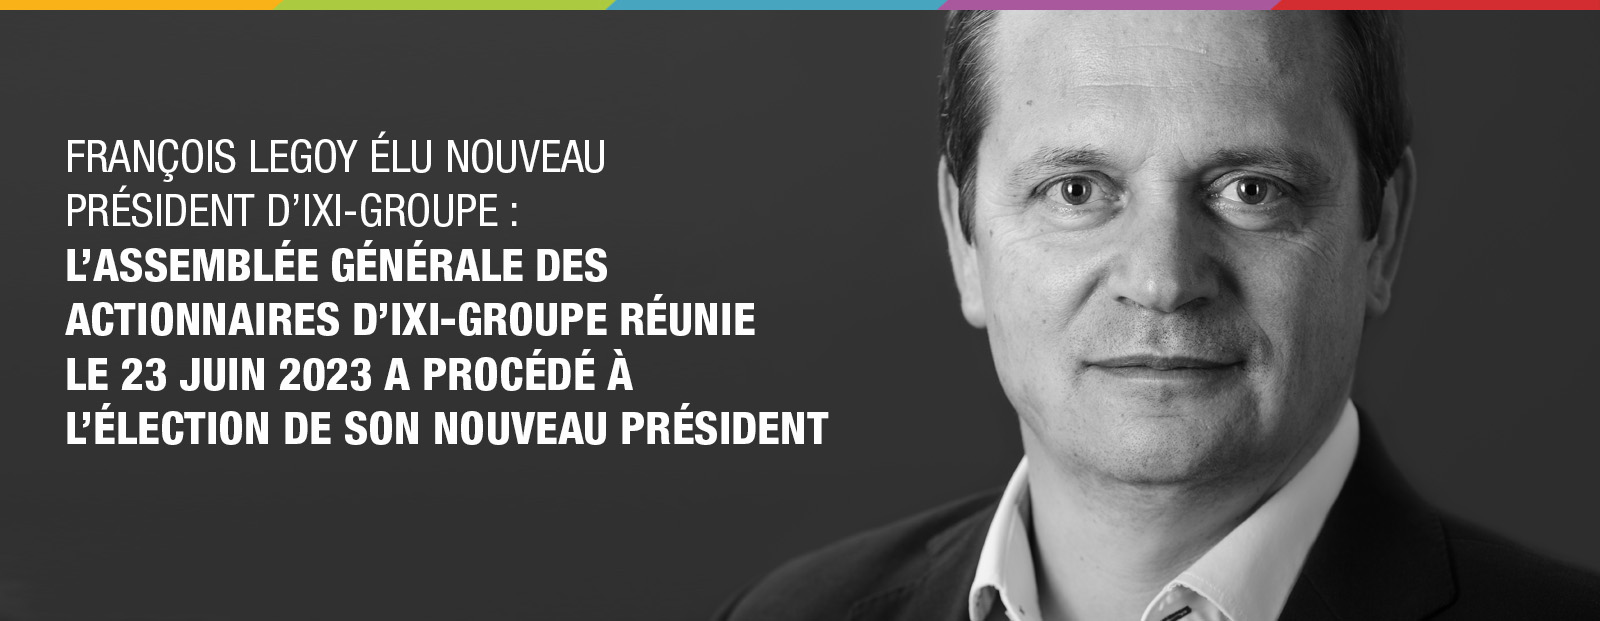 François LEGOY élu nouveau Président d’IXI-Groupe : L’Assemblée Générale des Actionnaires d’IXI-Groupe réunie le 23 juin 2023 a procédé à l’élection de son nouveau Président